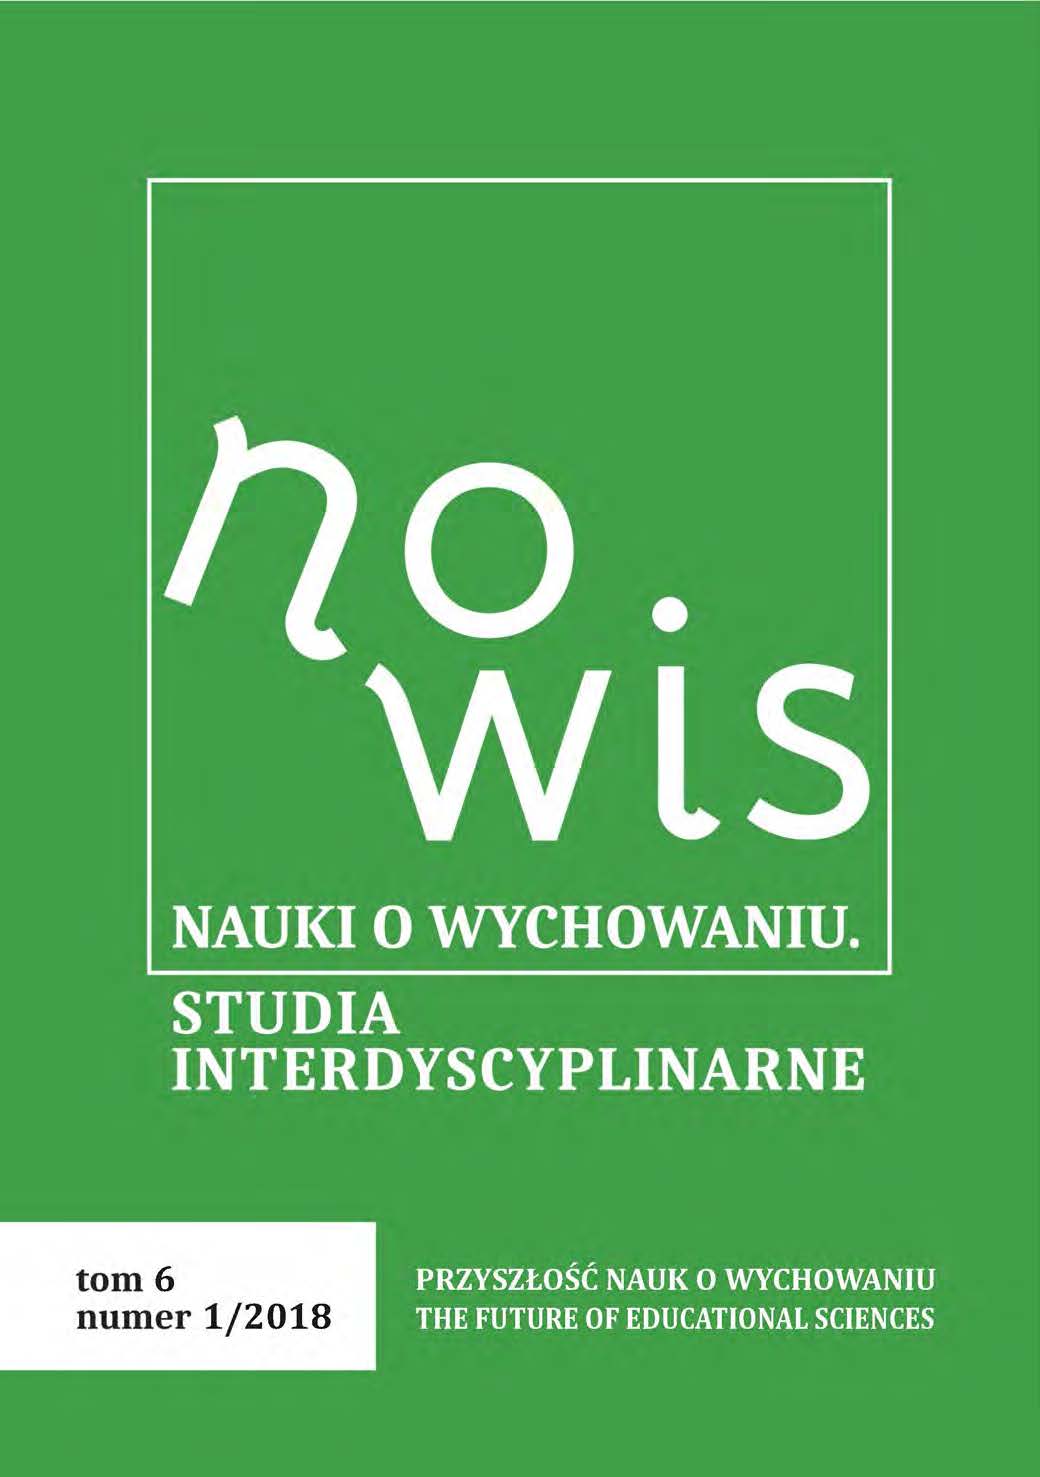 Ocena parametryczna jednostek naukowych w Polsce w roku 2017 w obszarze nauk humanistycznych i społecznych prowadzących badania naukowe i kształcenie akademickie w zakresie pedagogiki